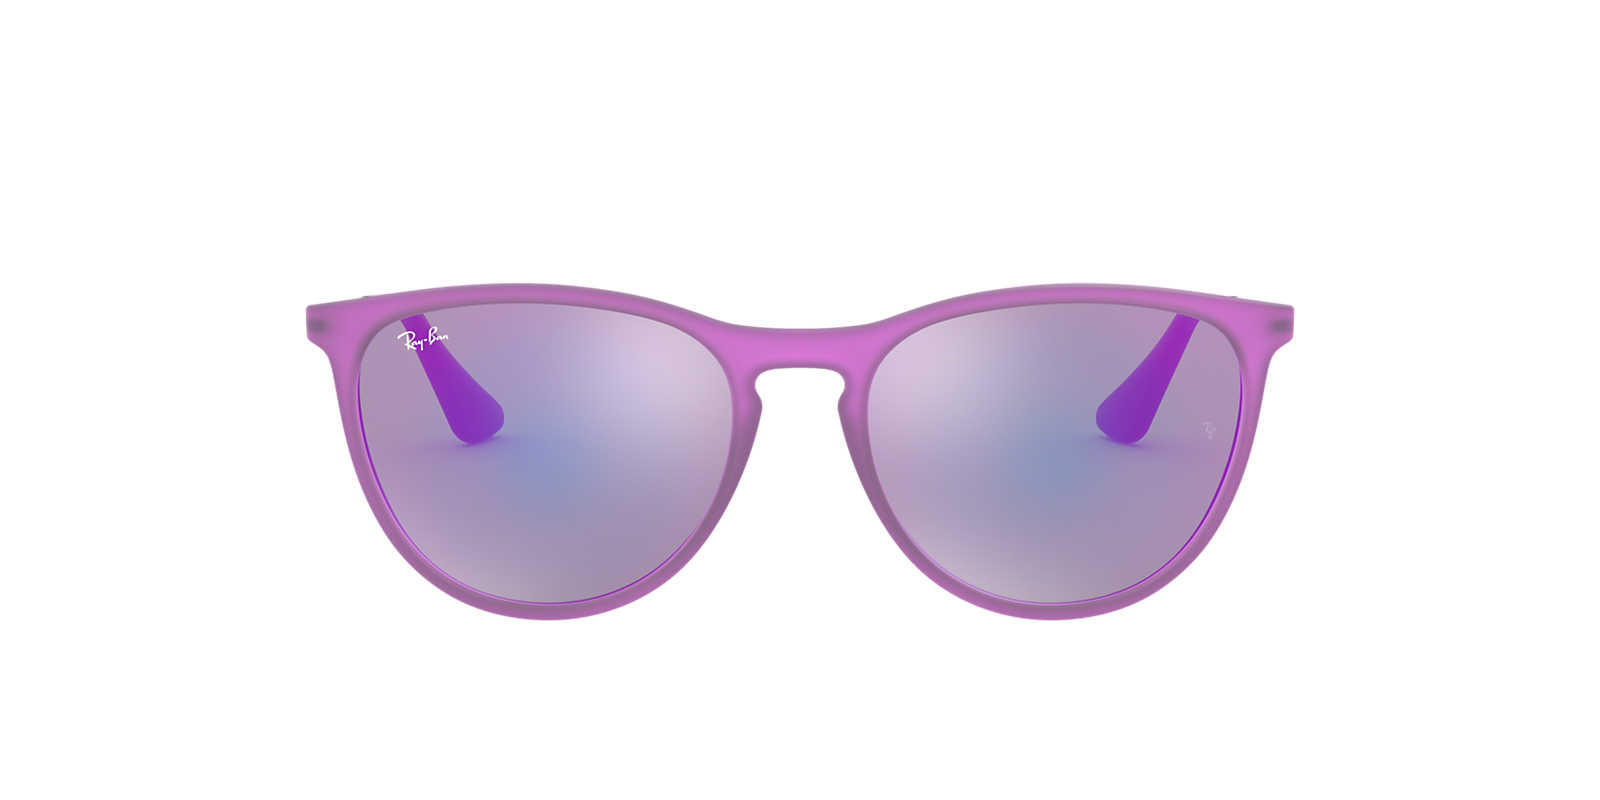 2019 cheap ray ban sunglasses canada free shiping